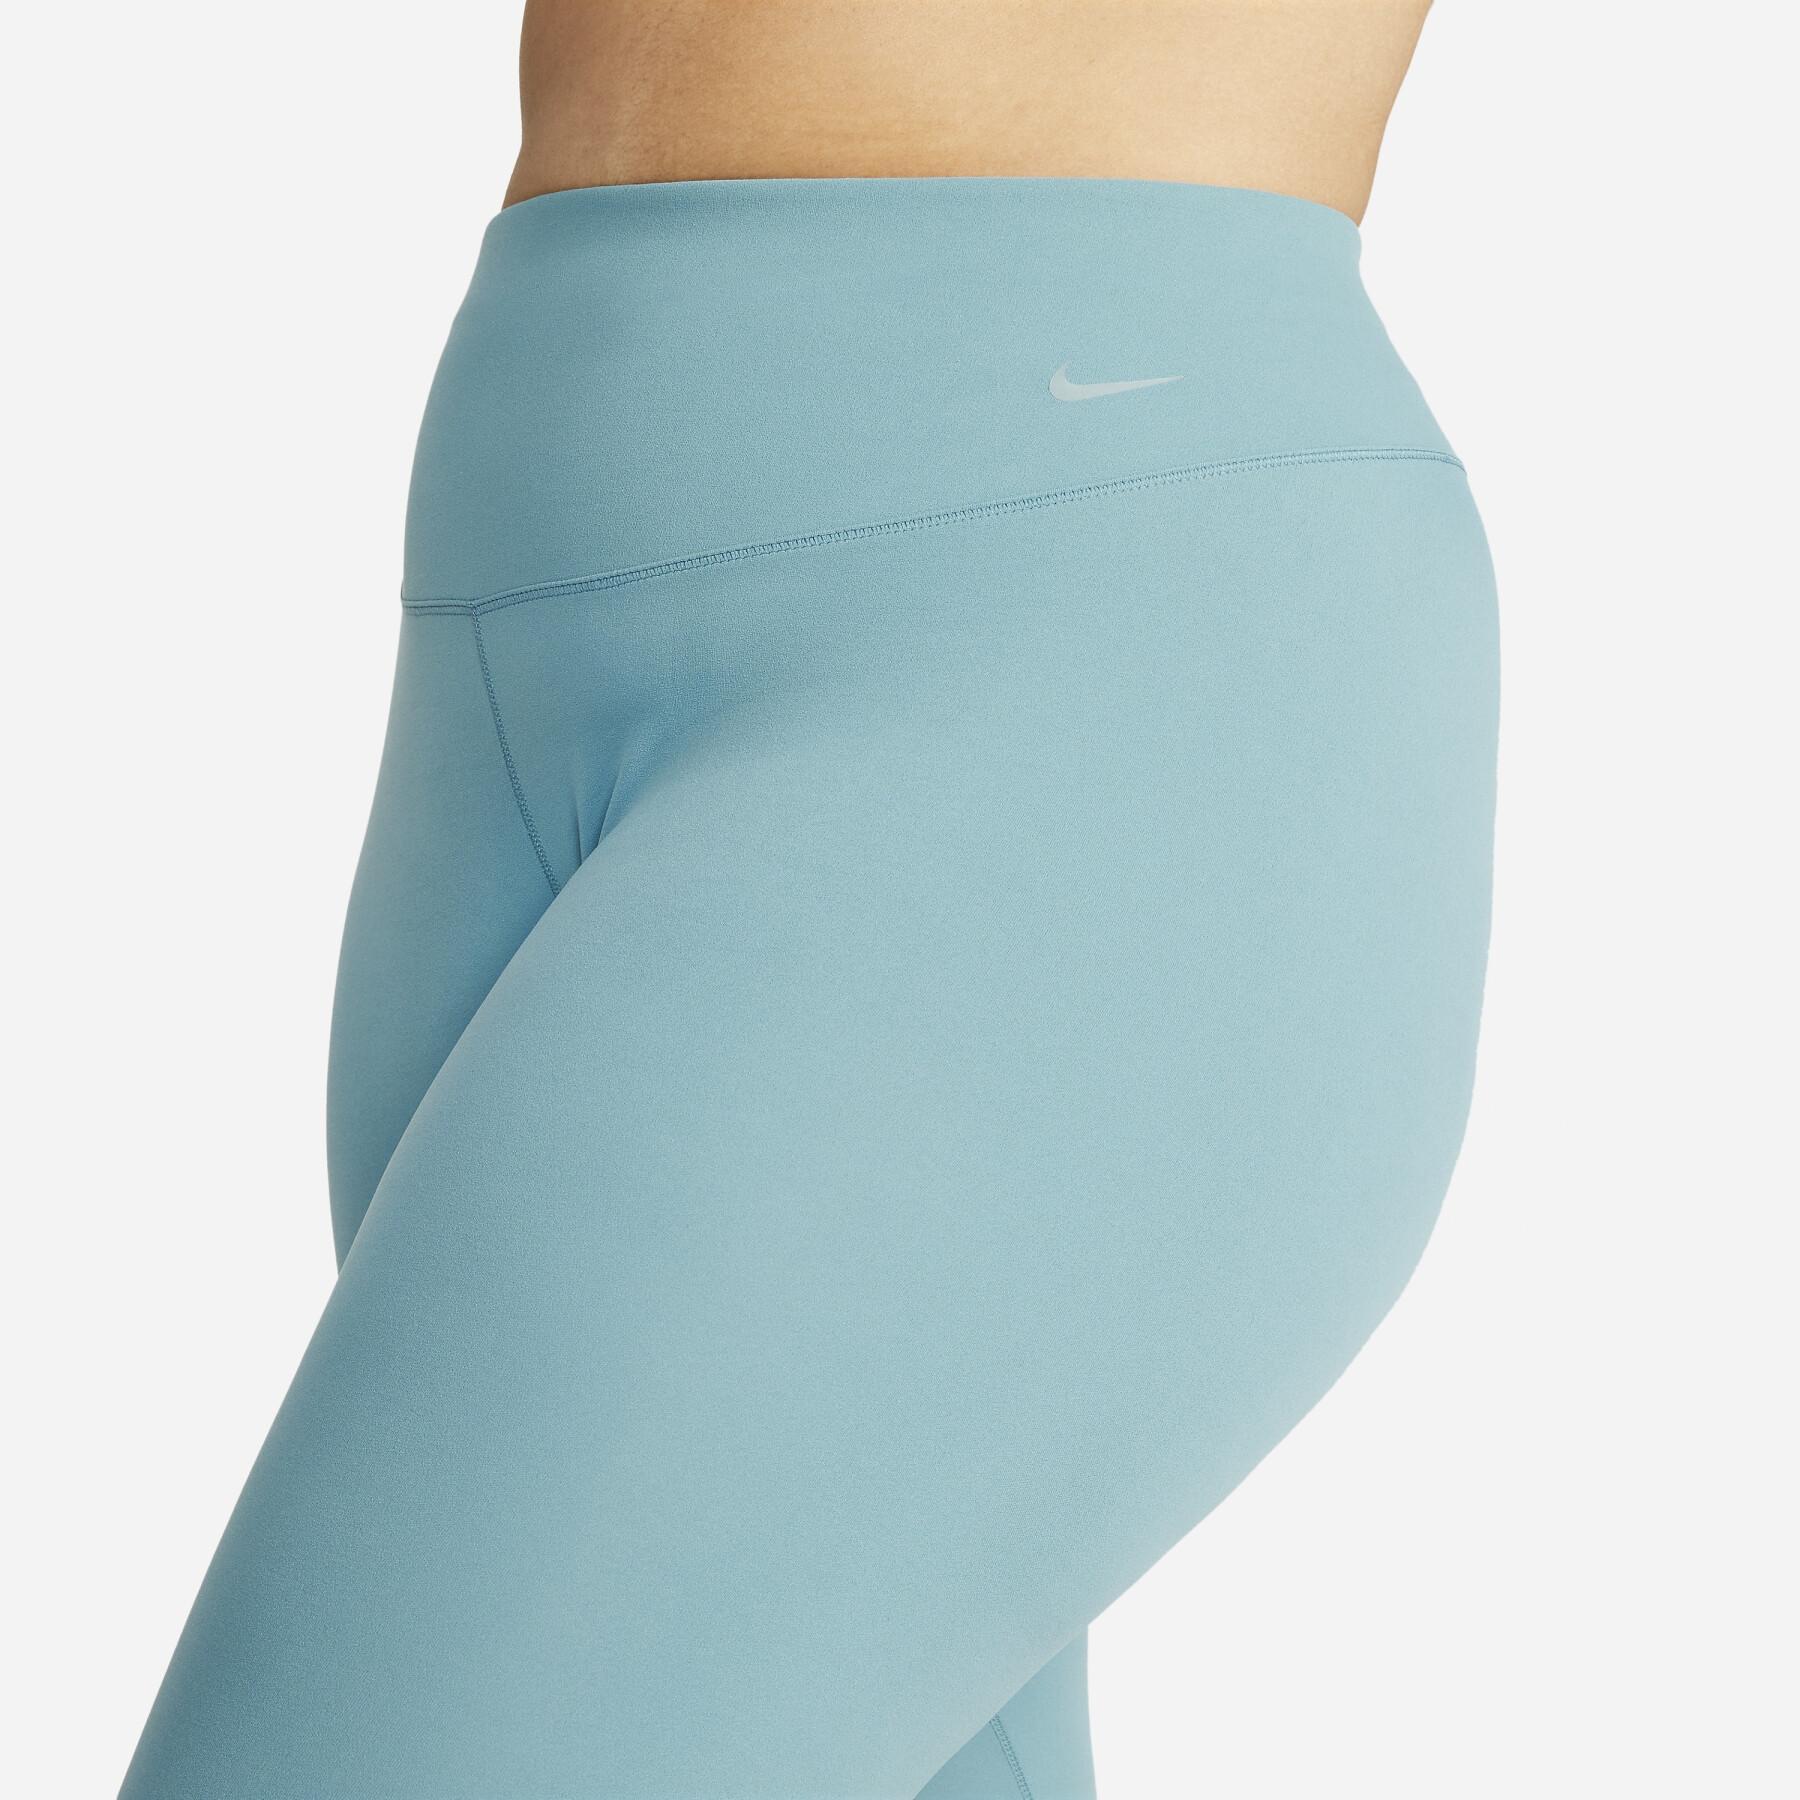 Legging 7/8 femme Nike Dri-Fit Zenvy HR